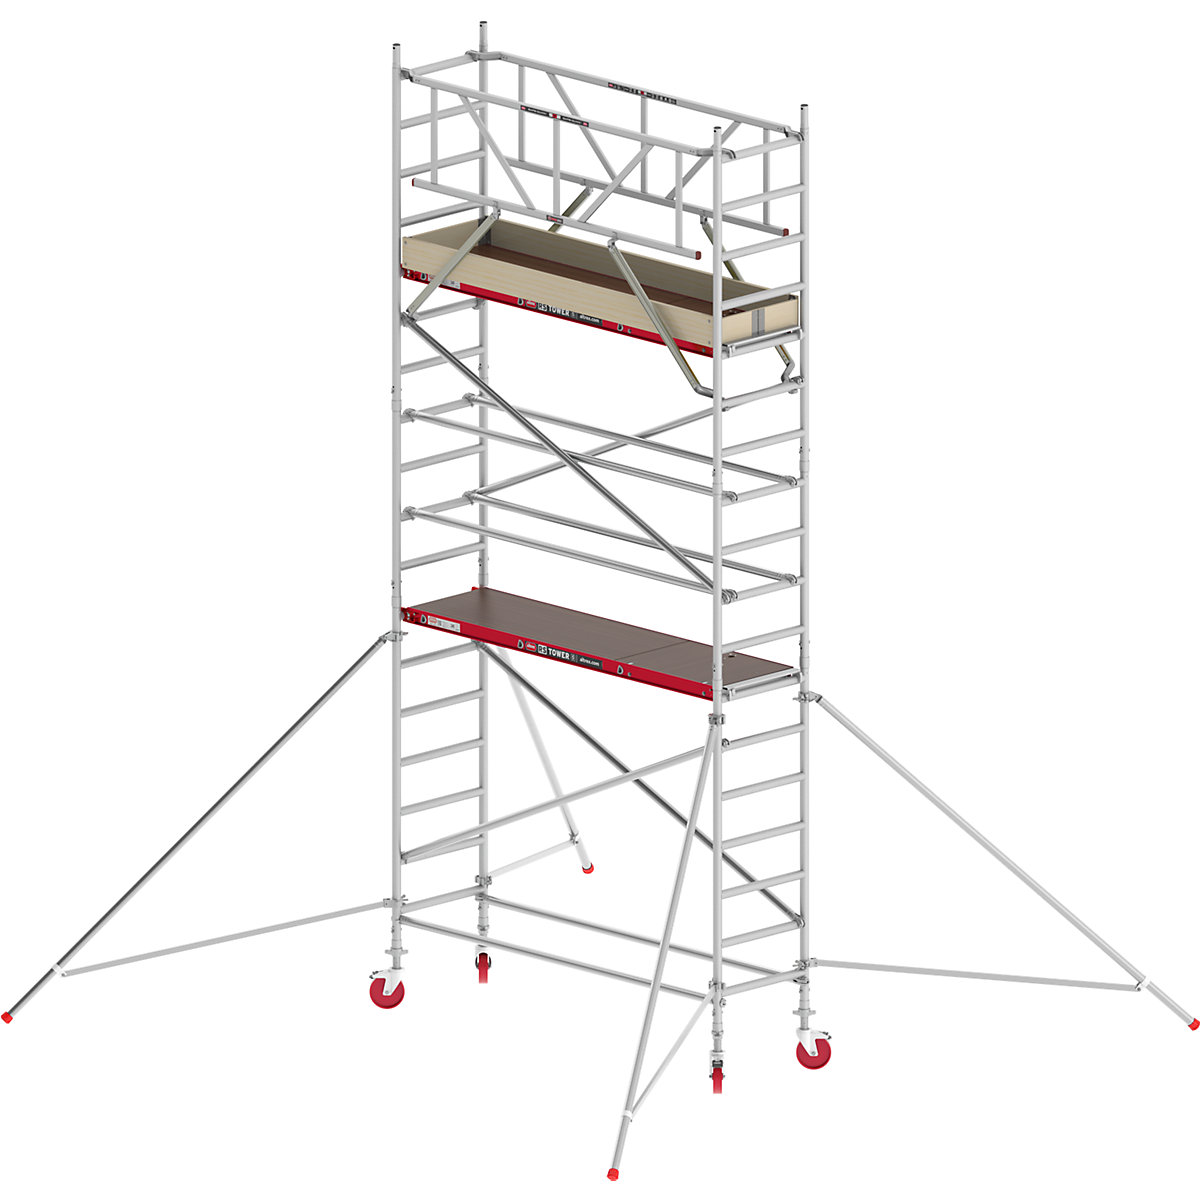 Trabattello mobile RS TOWER 41 stretto – Altrex, piattaforma in legno, lunghezza 1,85 m, altezza di lavoro 6,20 m-6